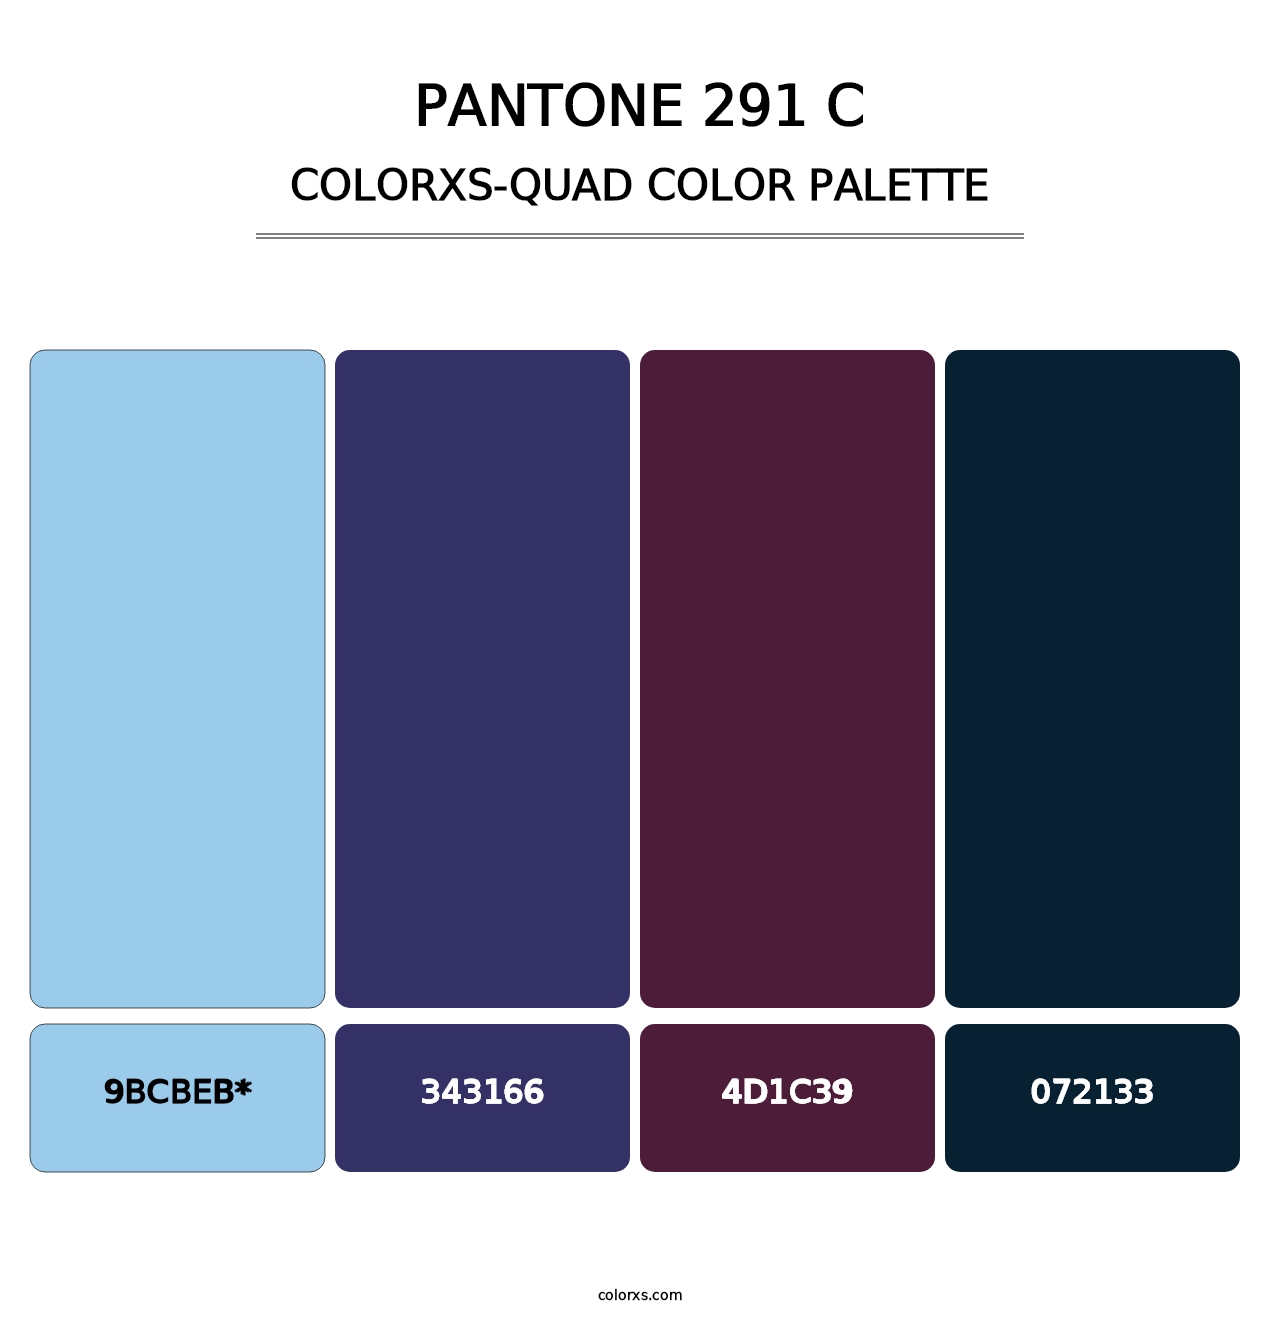 PANTONE 291 C - Colorxs Quad Palette